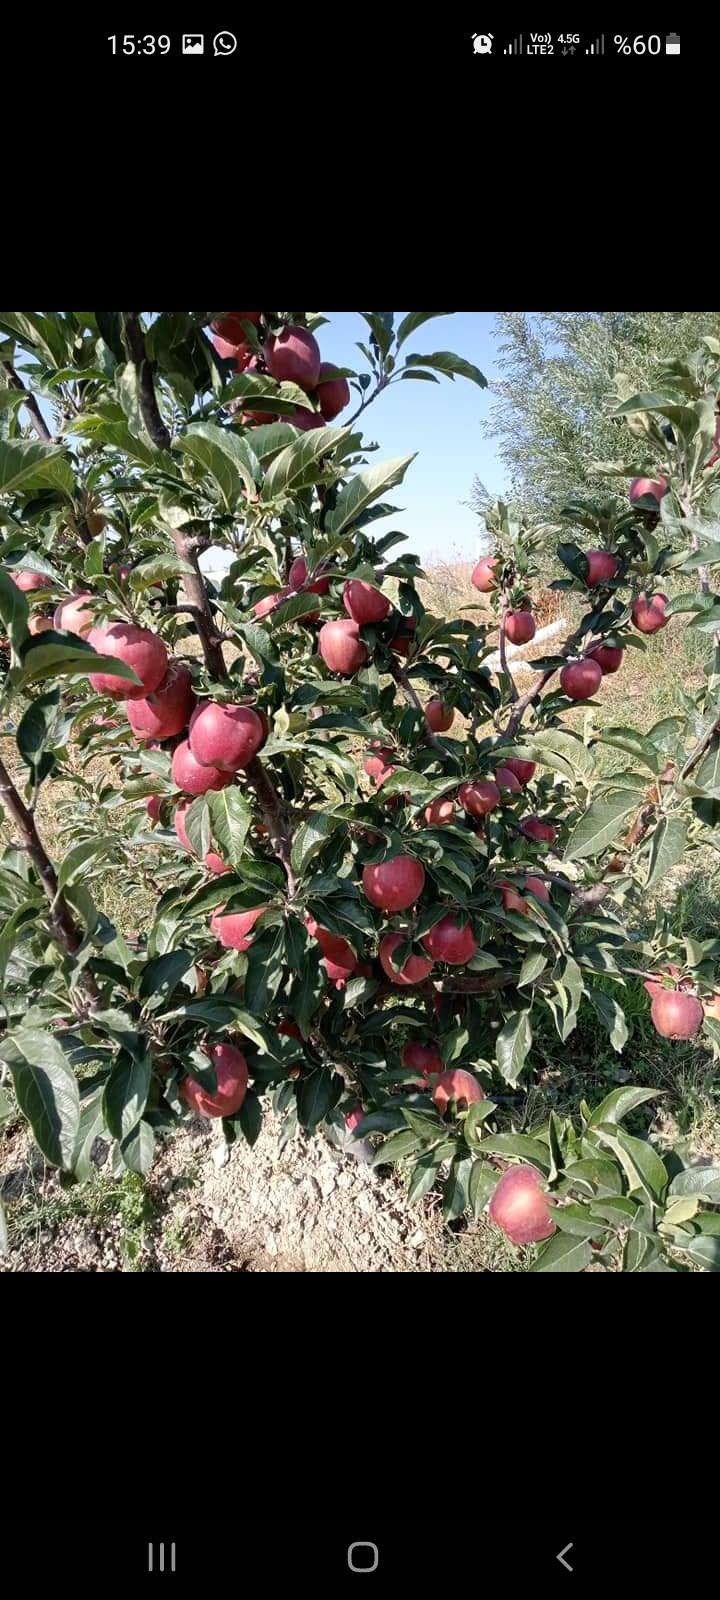 Elma - Mustafa Sönmez tarafından verilen satılık starking delicious çeşidi elma  ilanını ve diğer satılık elma ilanlarını tarimziraat.com adresinde bulabilirsiniz